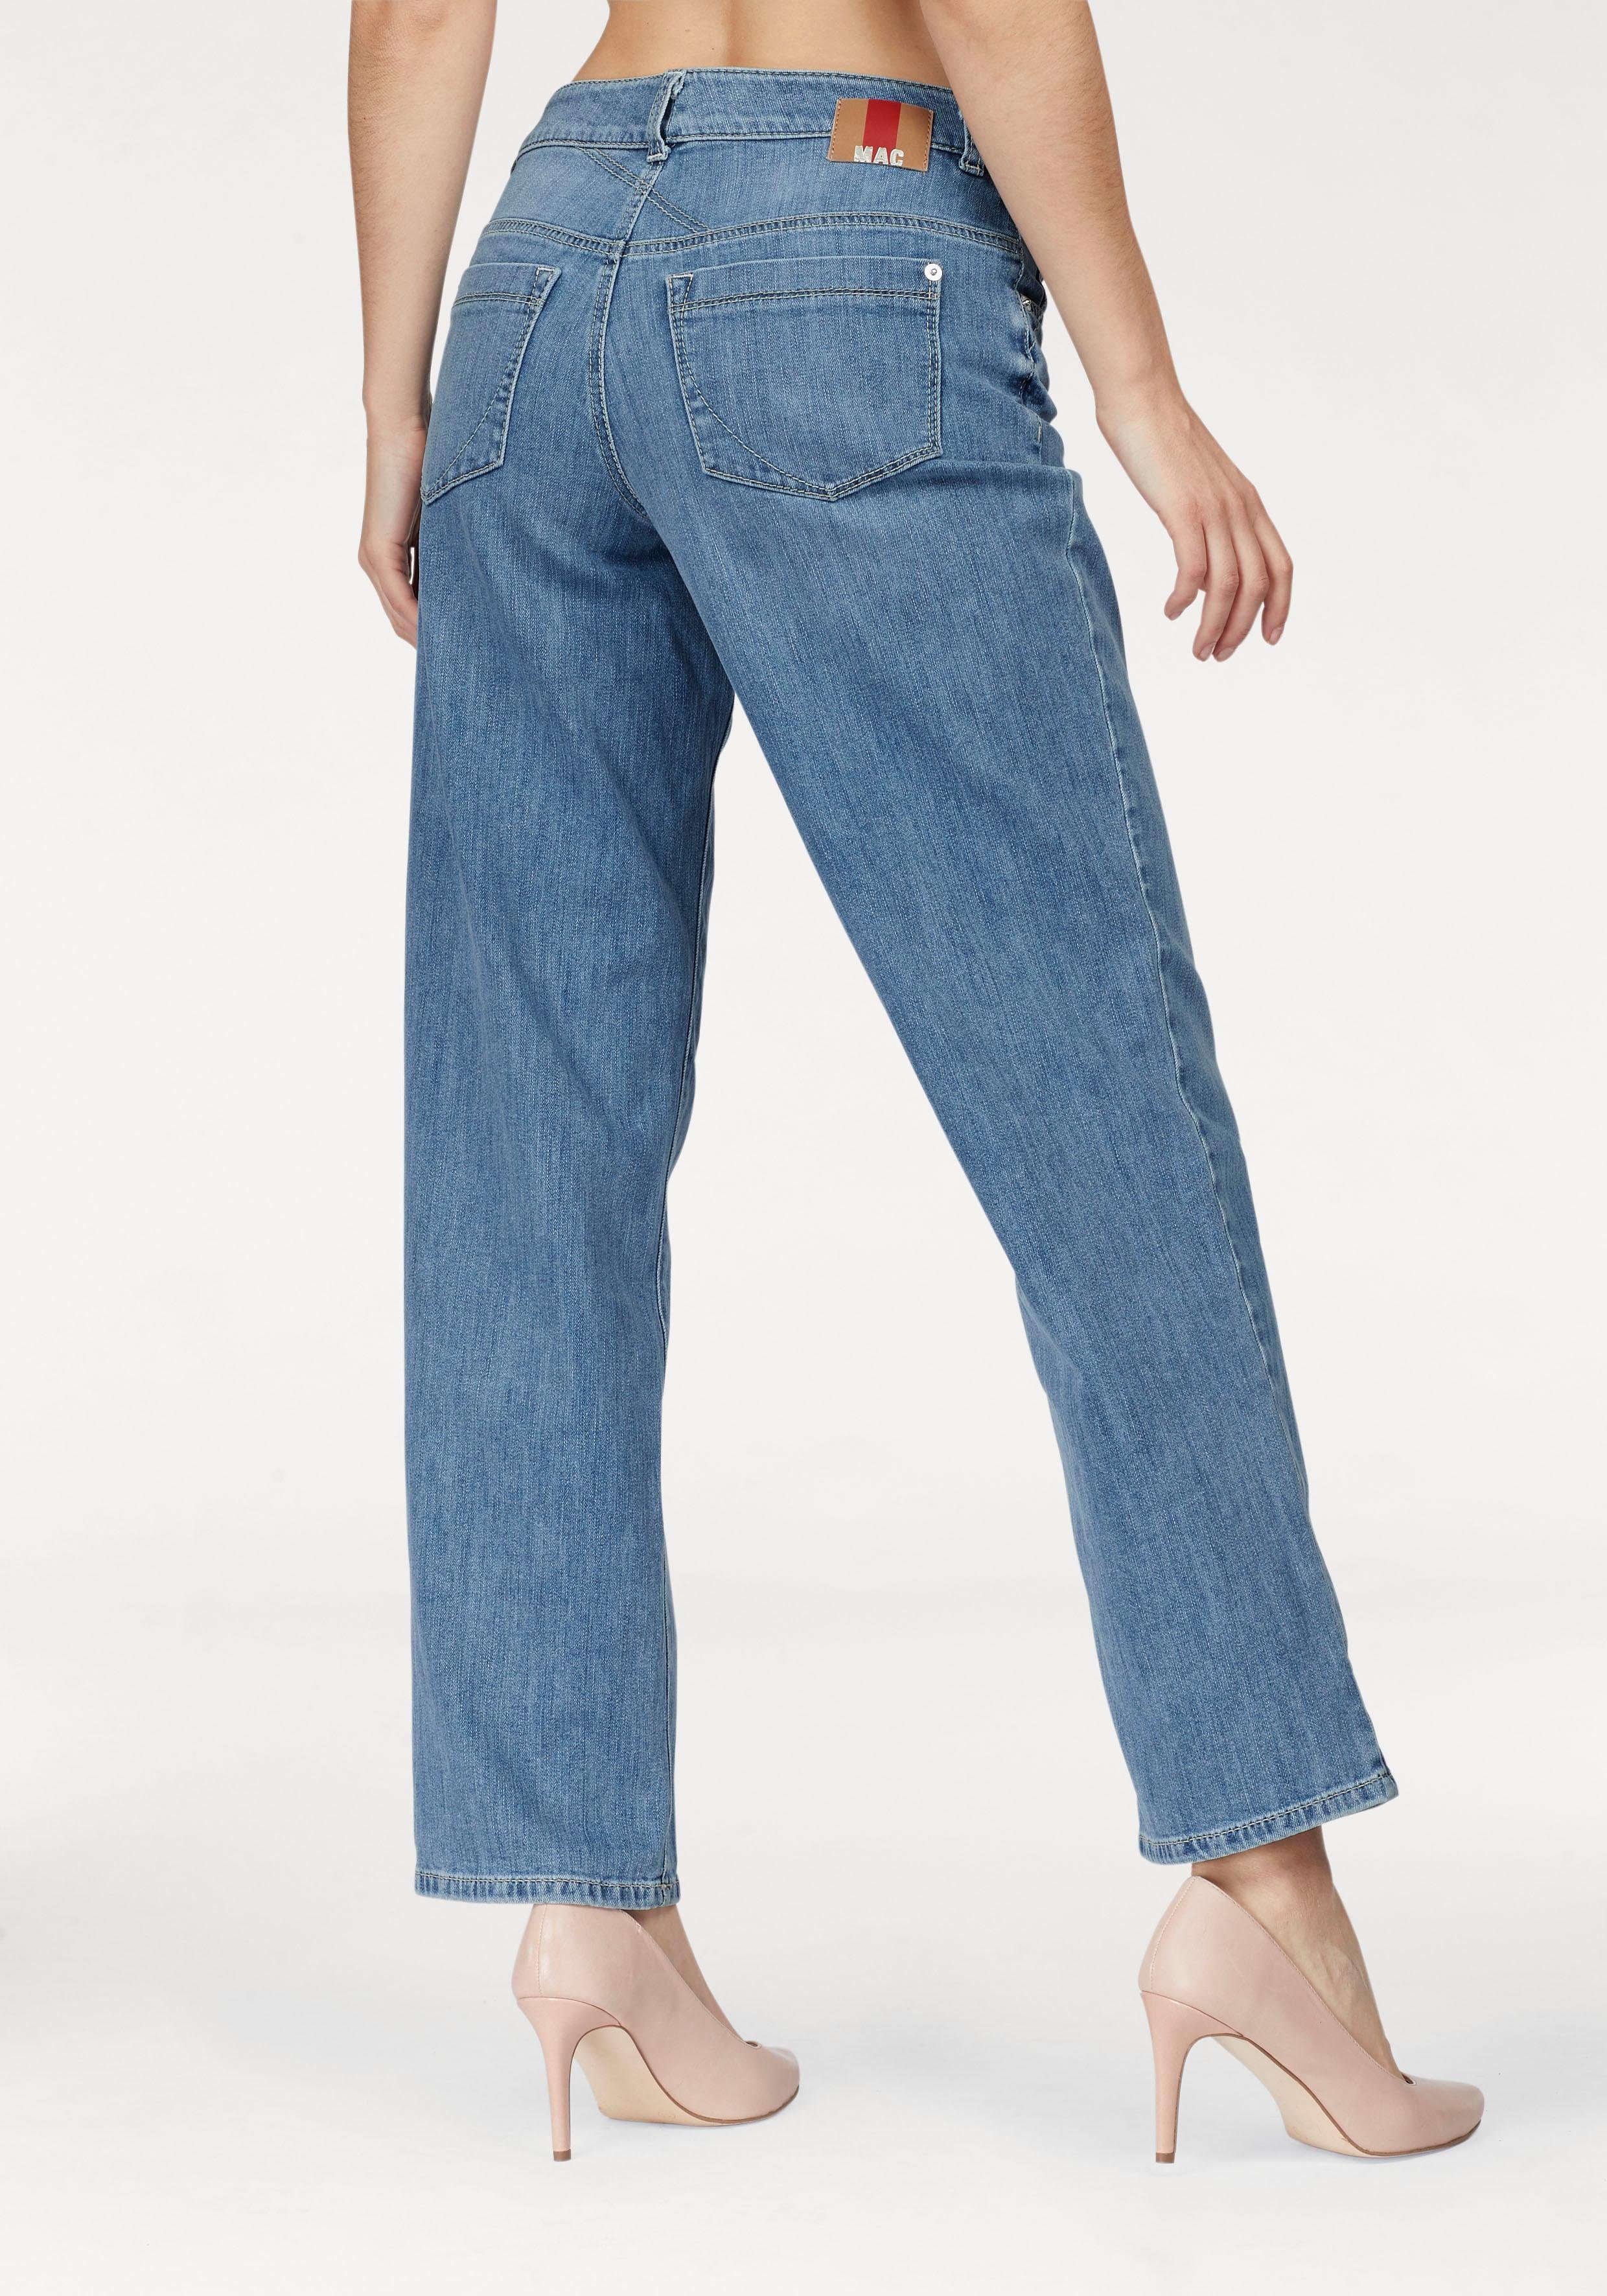 Otto - Mac NU 15% KORTING: MAC prettige jeans Gracia